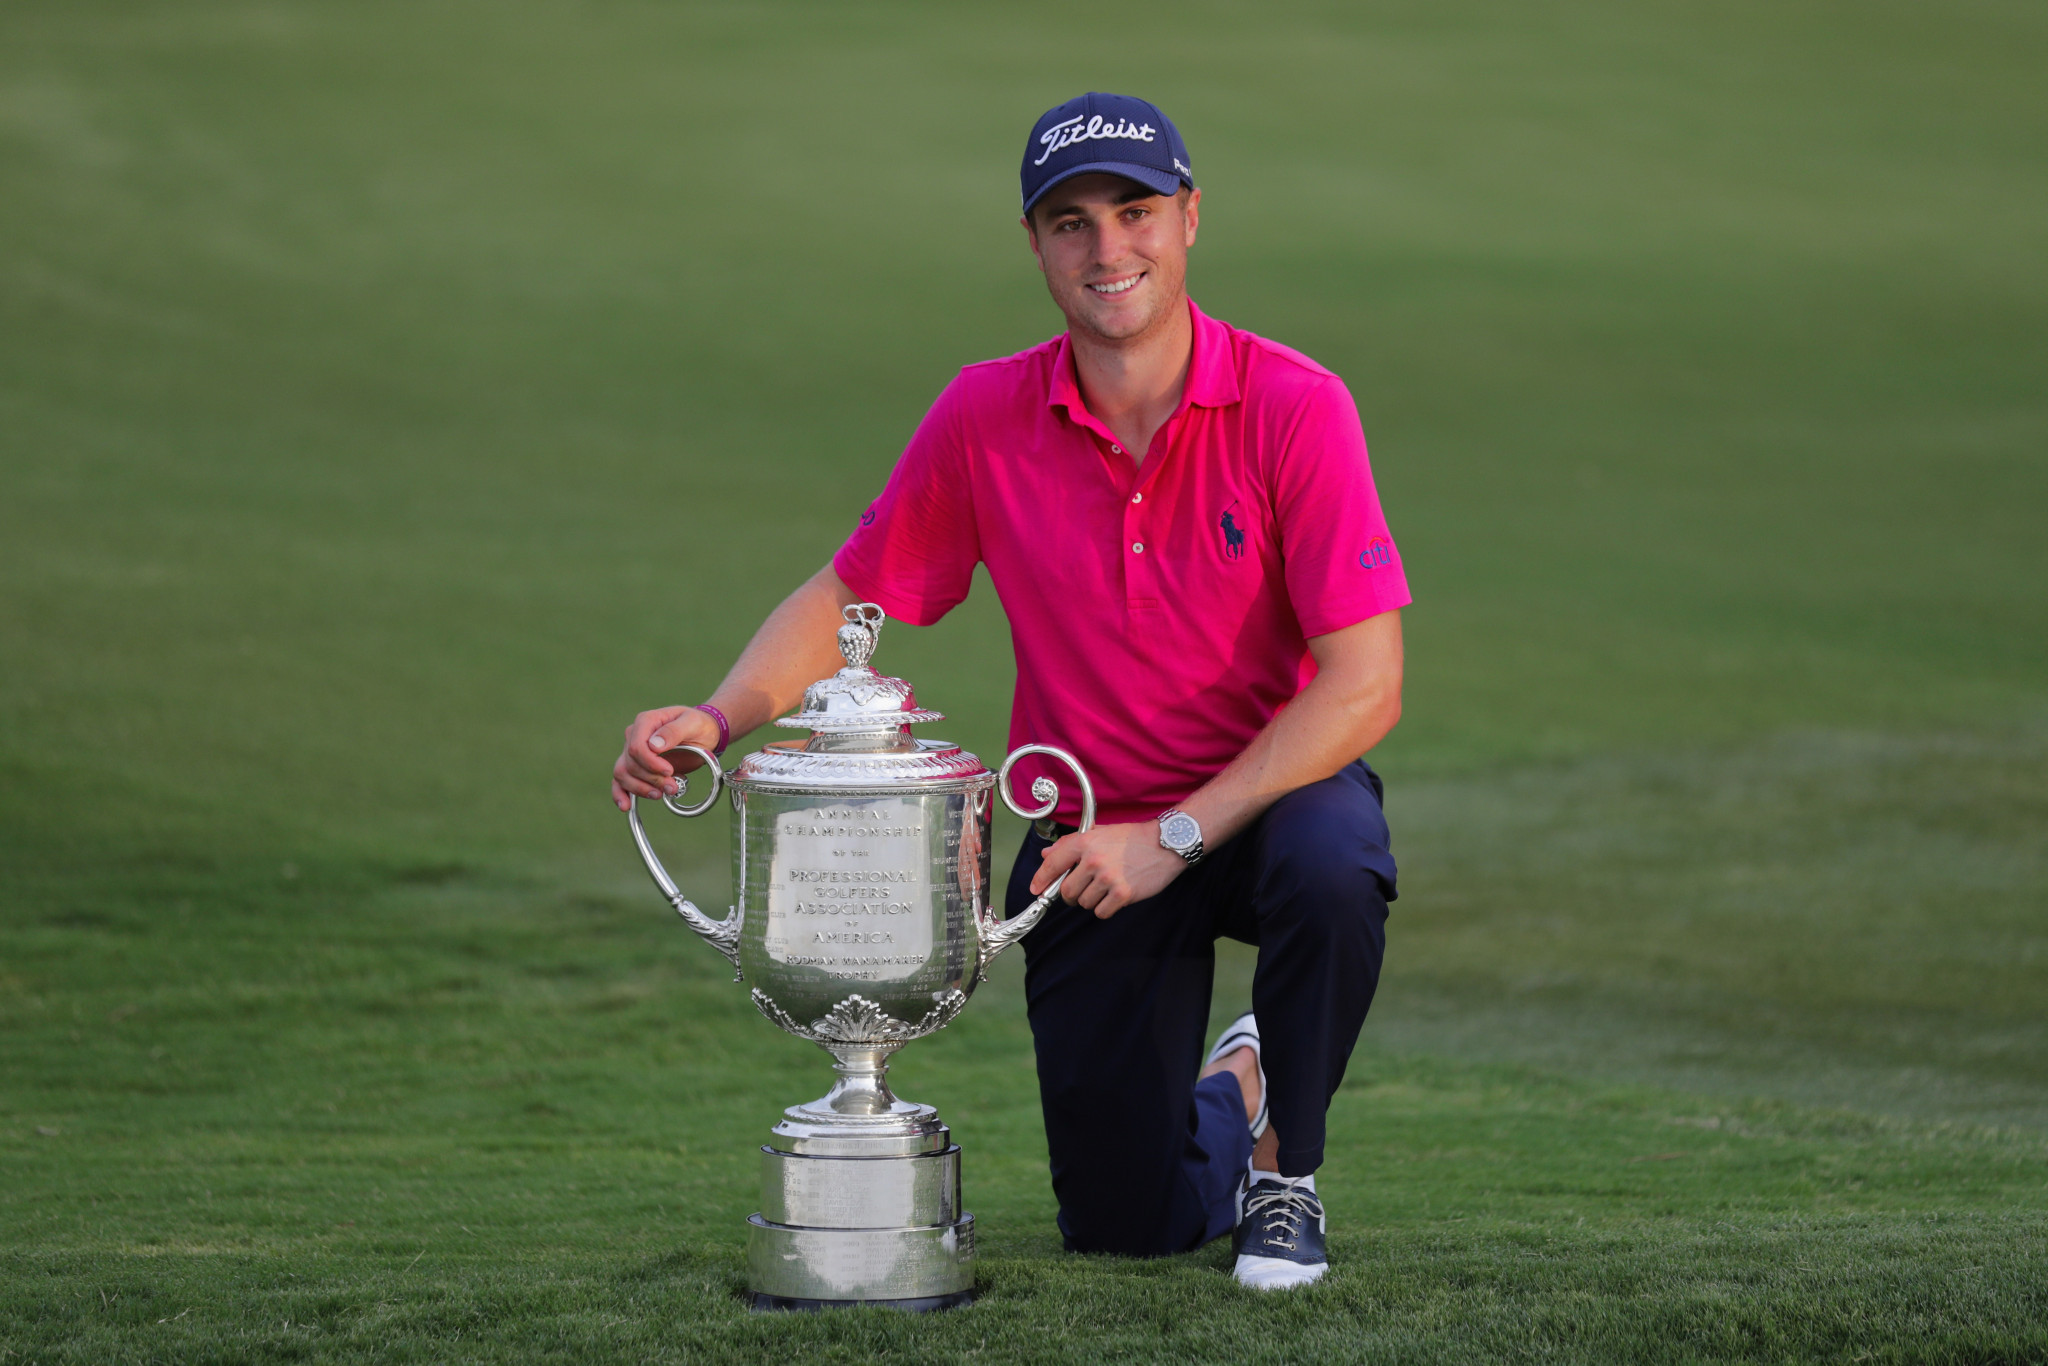 Justin Thomas won the 2017 PGA Championship at Quail Hollow ©Getty Images